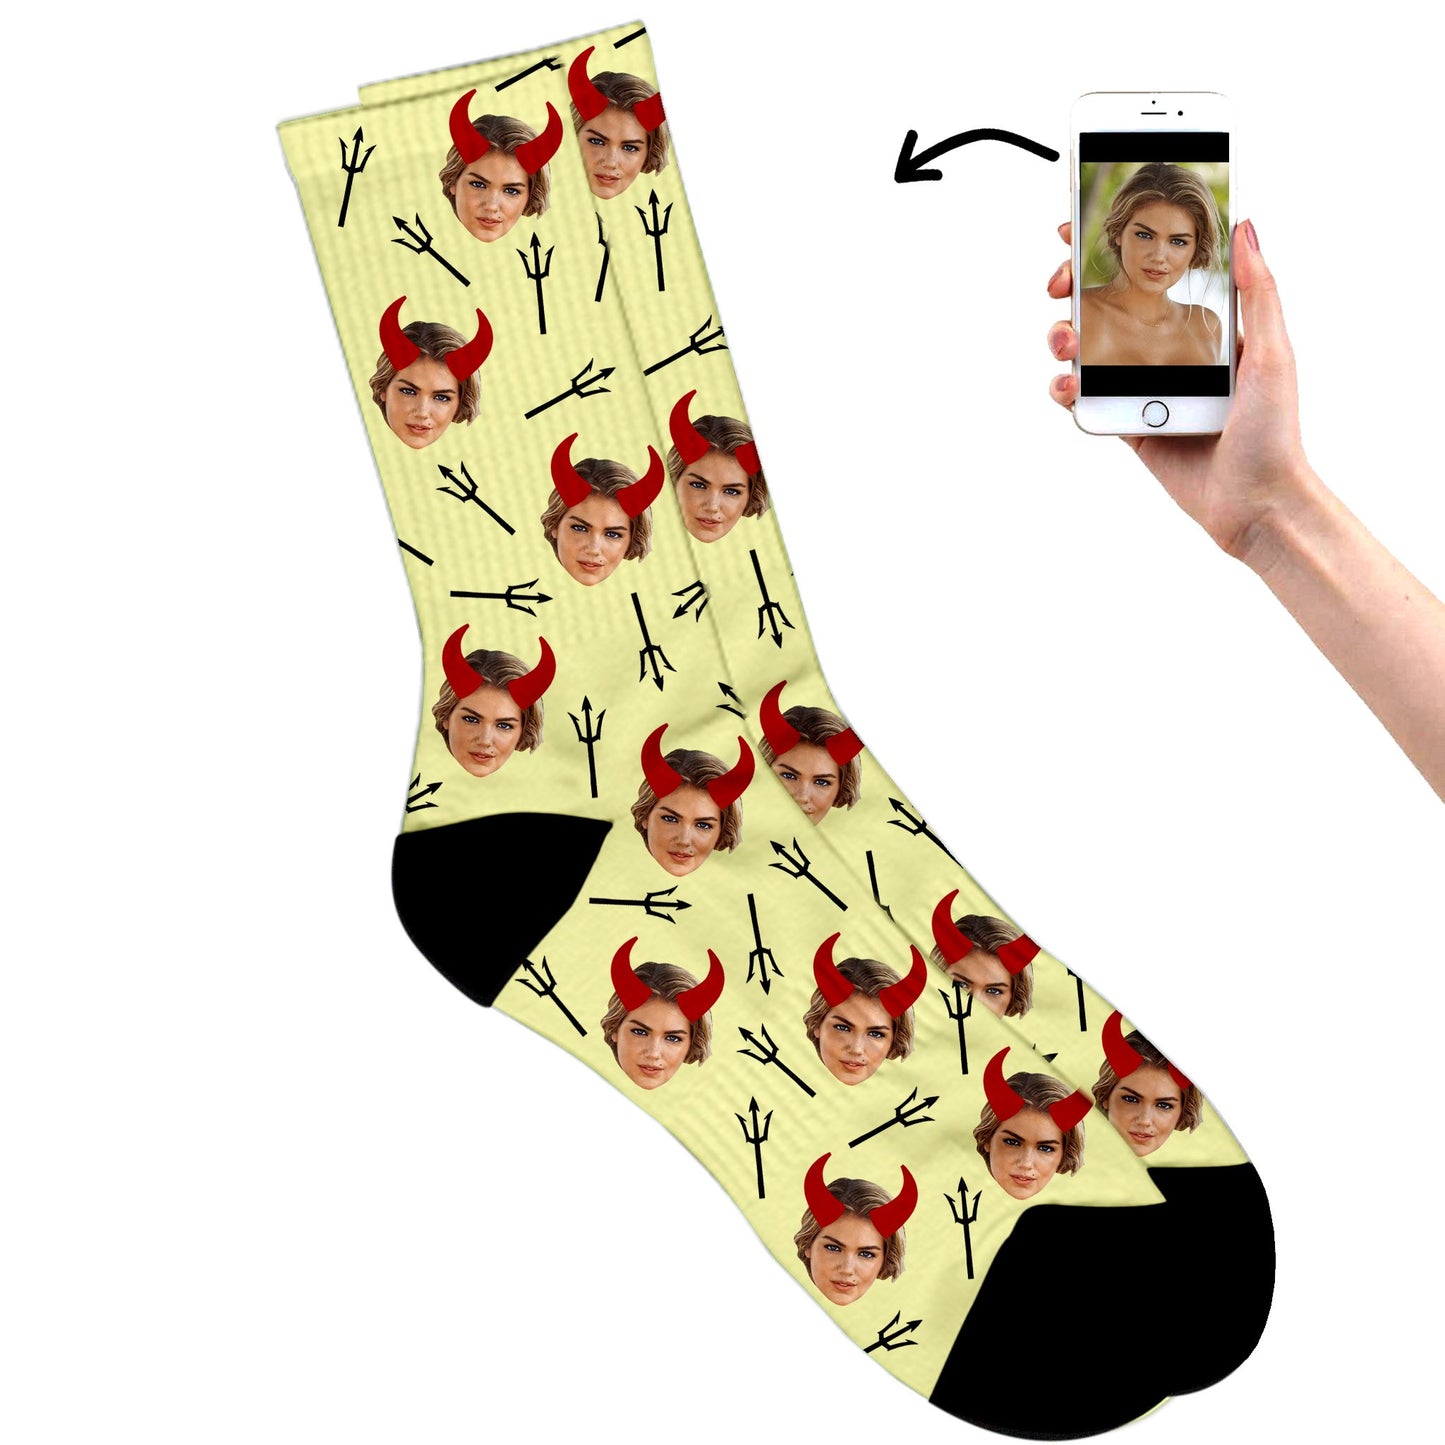 Devil Socks